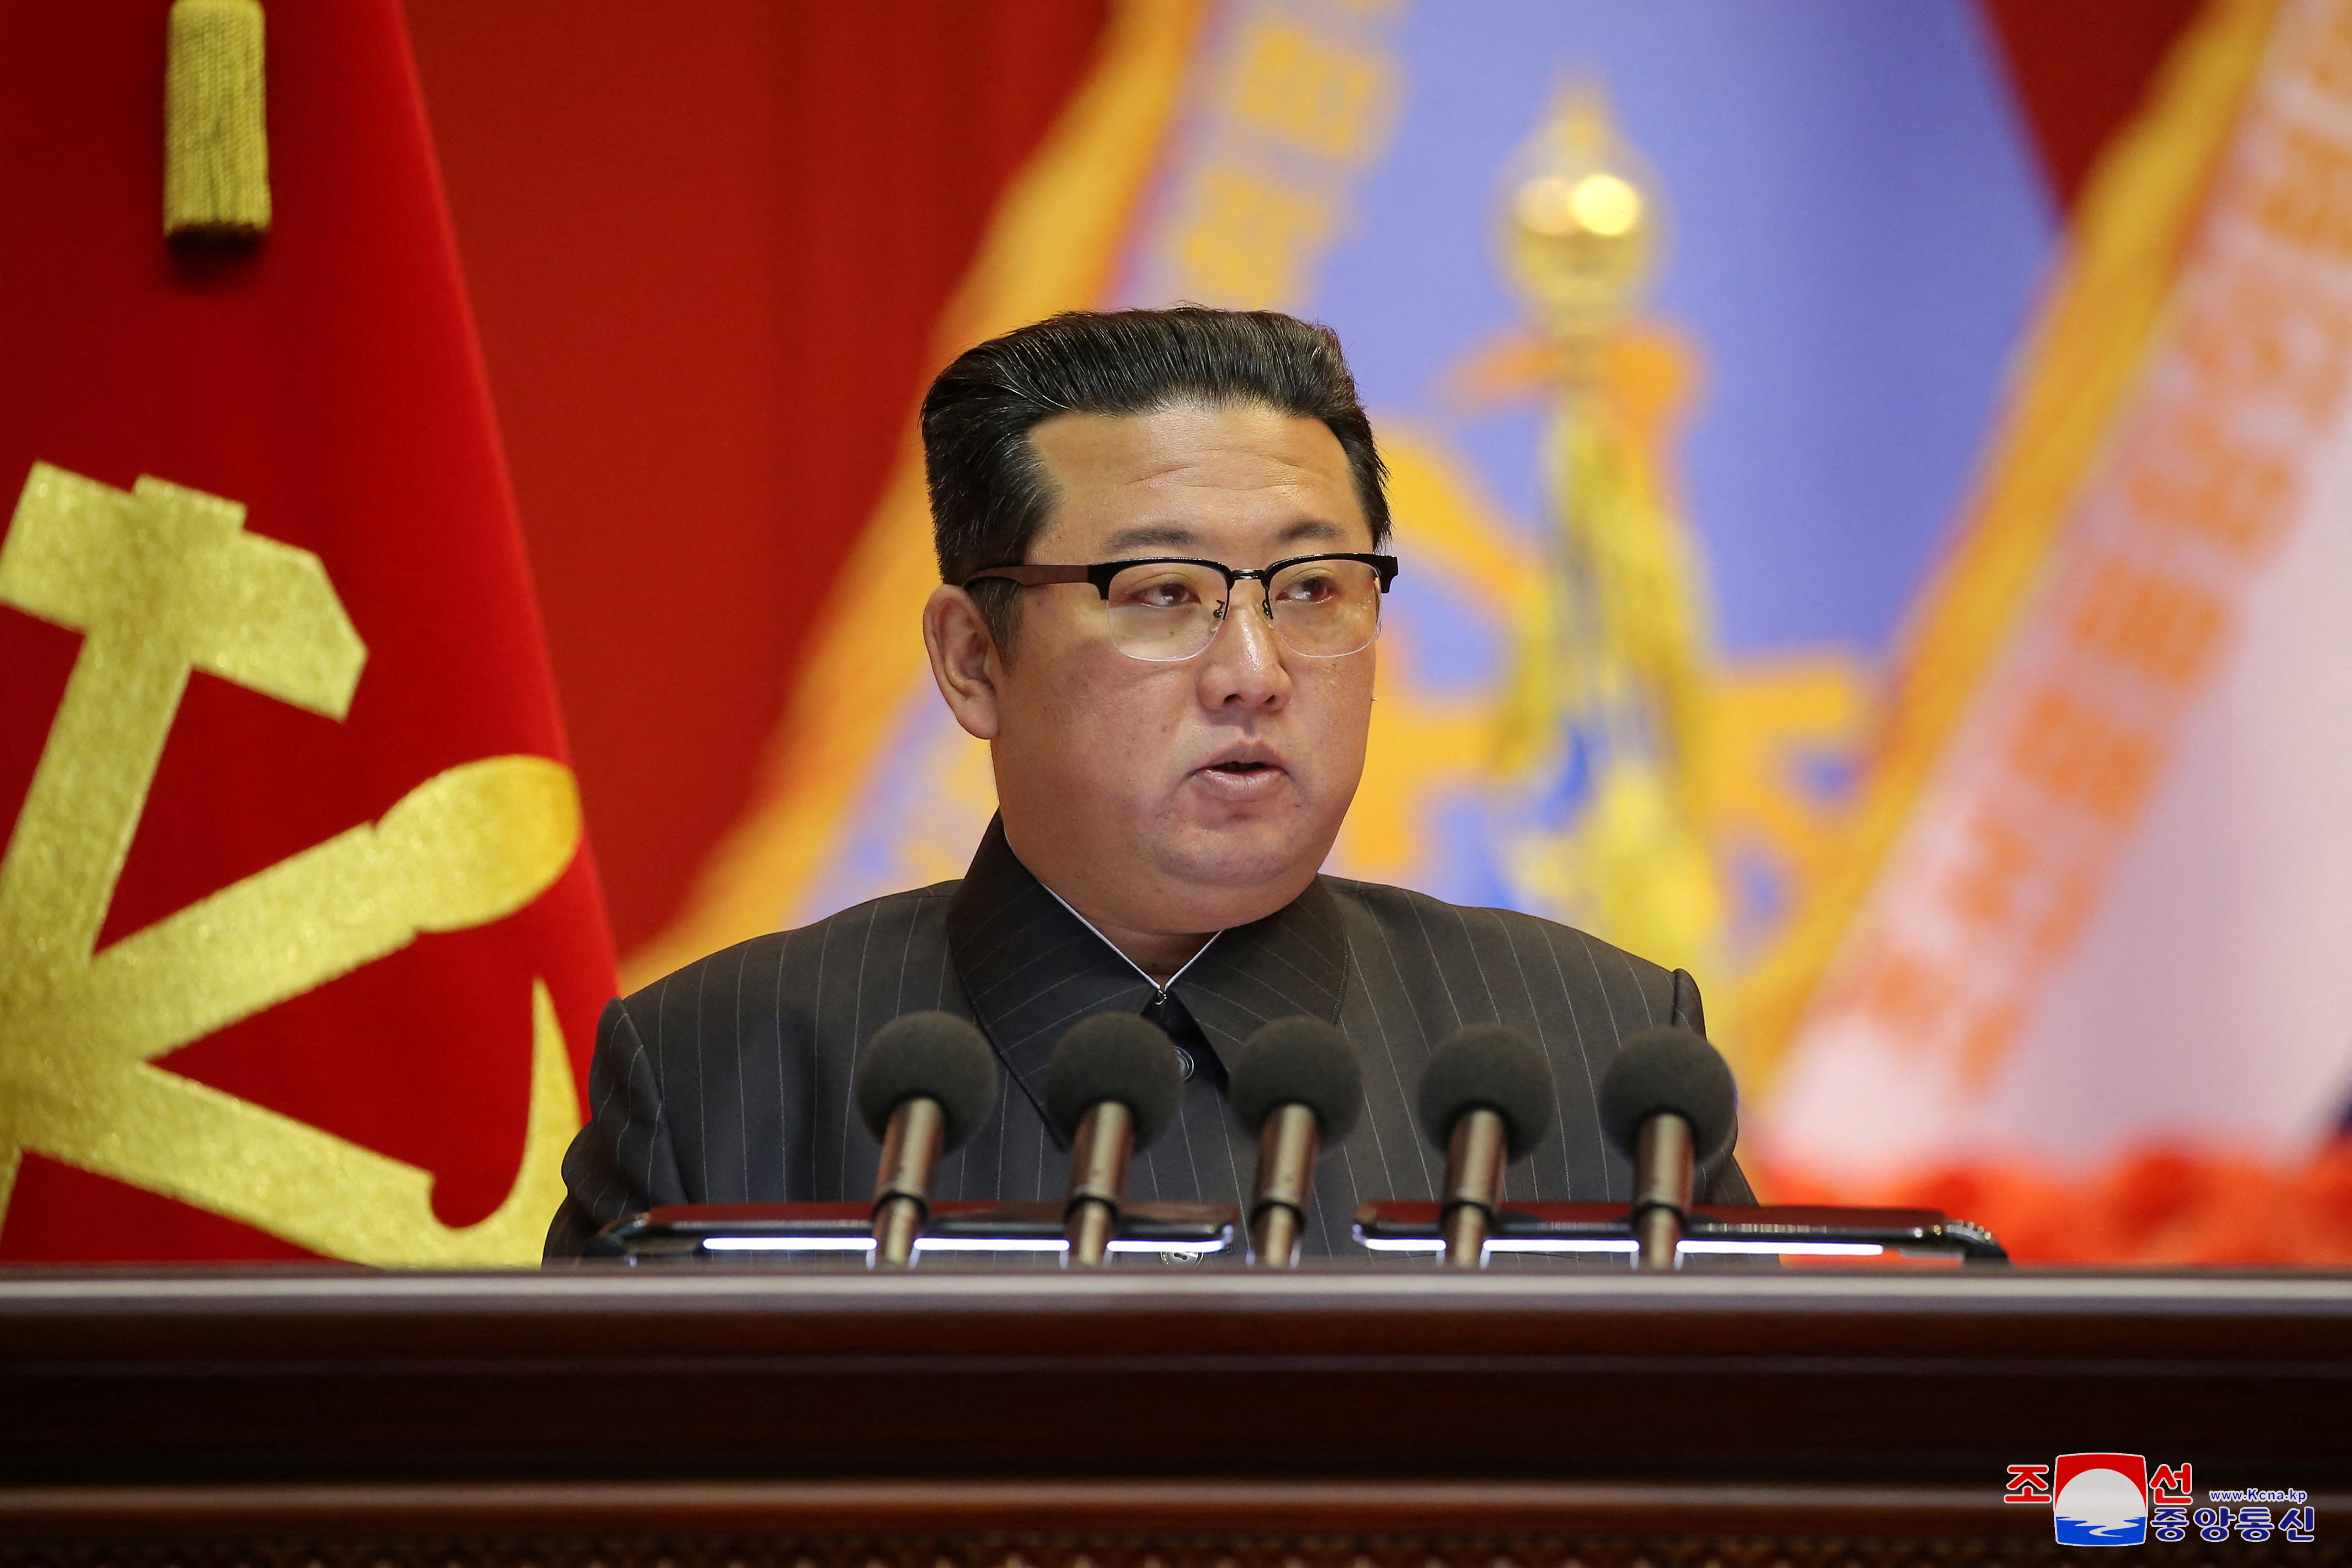 Nhà lãnh đạo Triều Tiên Kim Jong Un phát biểu trong Hội nghị lần thứ tám các nhà giáo dục quân sự của Quân đội Nhân dân Triều Tiên tại Nhà Văn hóa ngày 25 tháng 4 ở Bình Nhưỡng, Triều Tiên trong bức ảnh không ghi ngày 7 tháng 12 năm 2021. KCNA thông qua REUTERS      